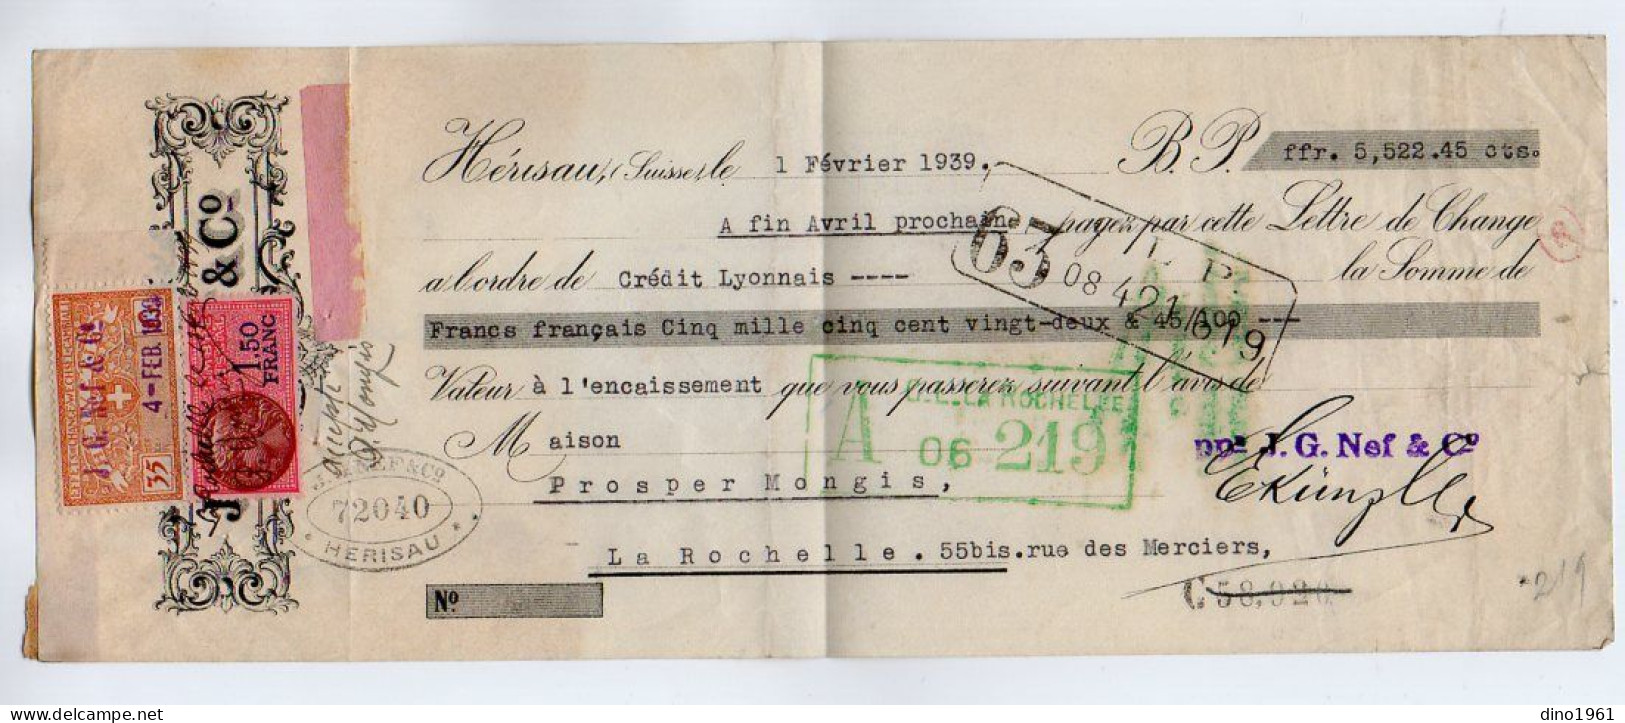 VP22.579 - Lettre De Change - HERISAU,Suisse 1939 - J. G. NEF & Co - Fiscal,Effets De Change - WECHSEL - CAMBIALI . 5Cs - Wechsel